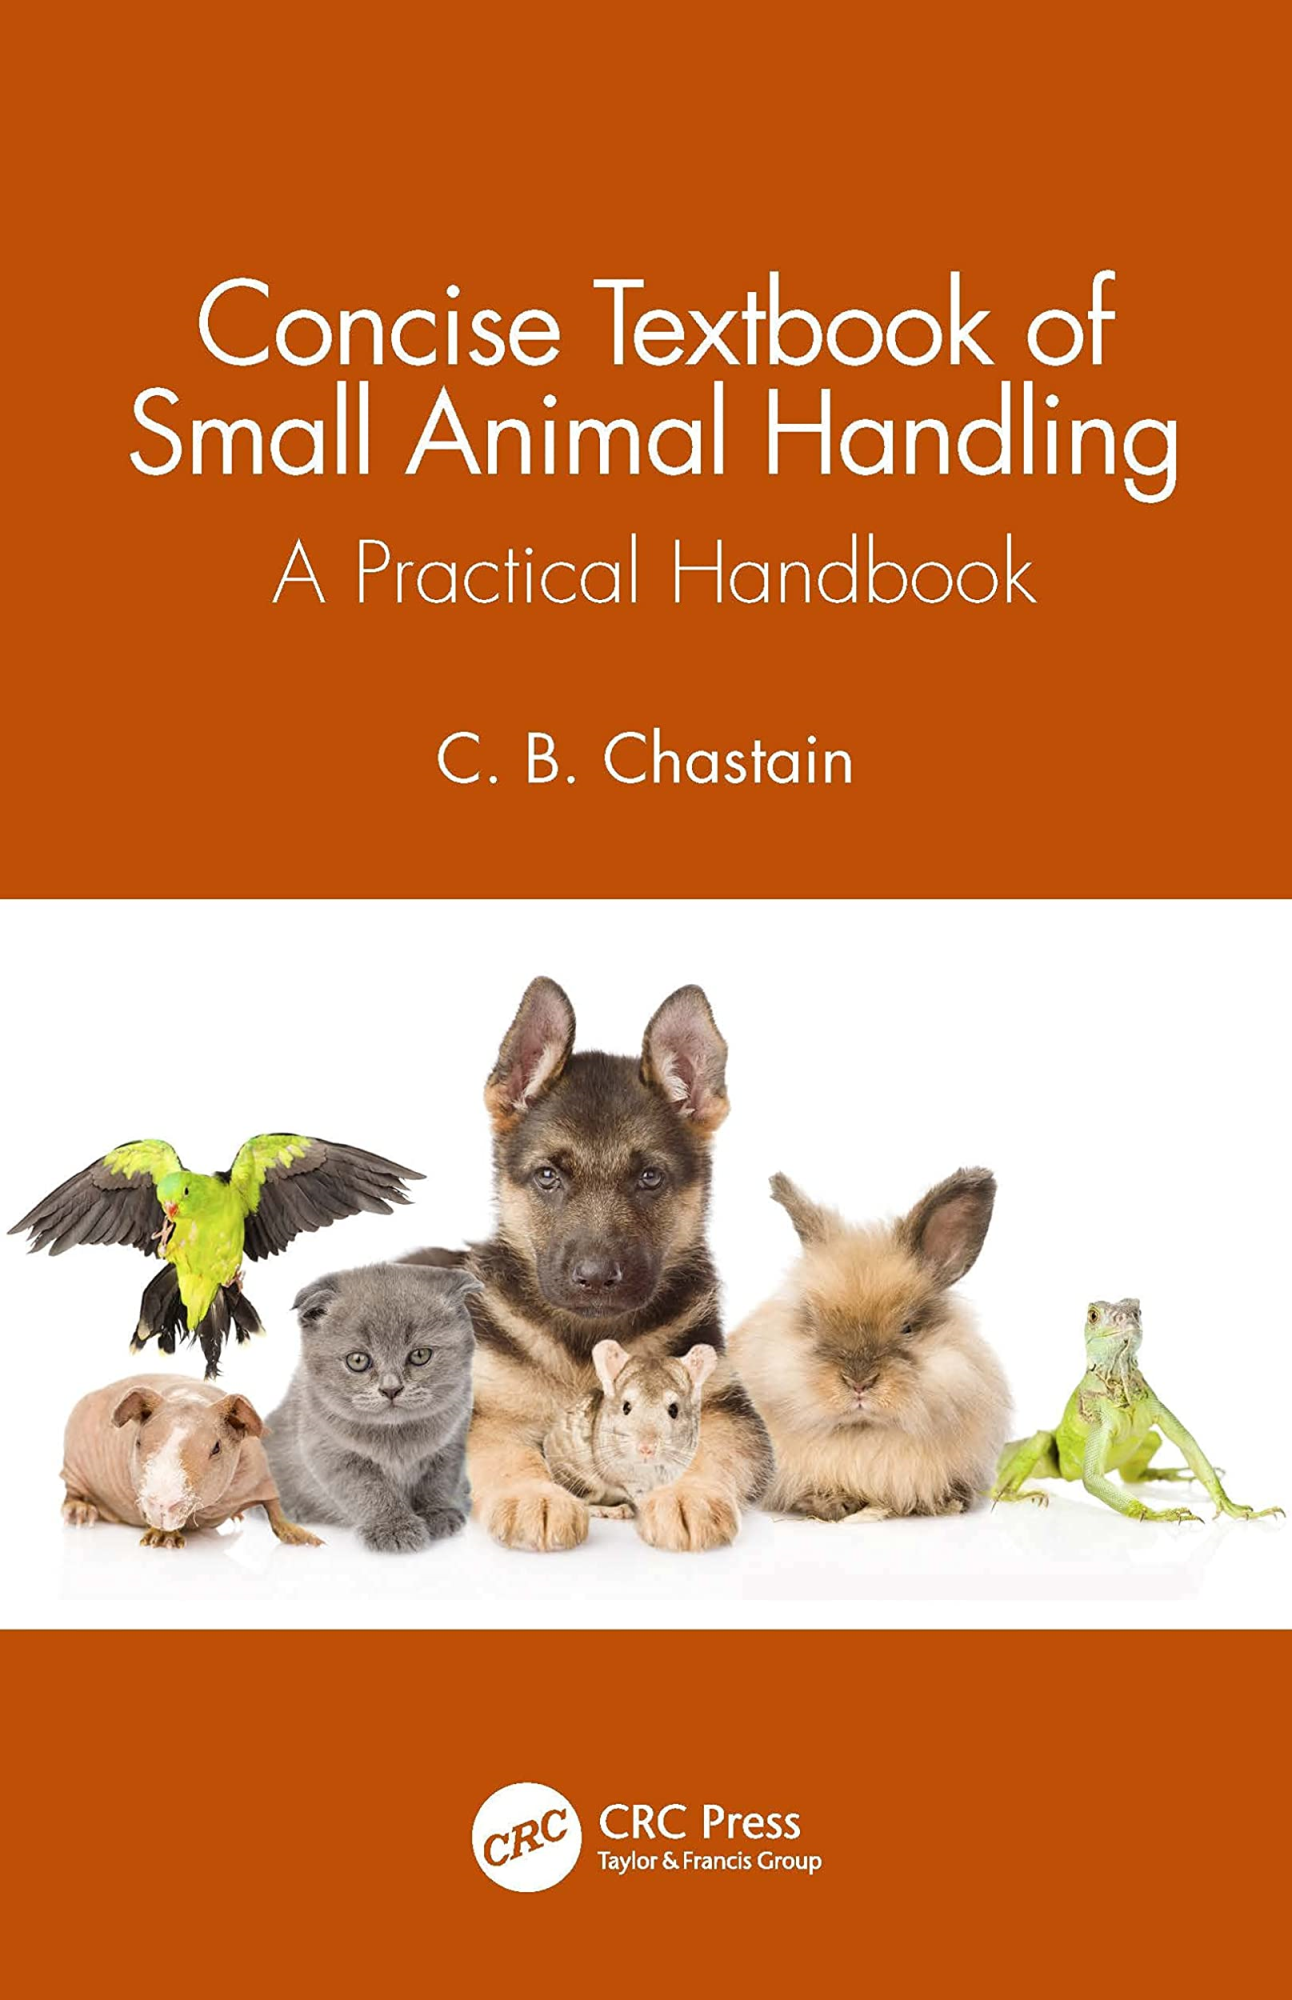 Libri Lynn Vellios - Concise Textbook Of Small Animal Handling NUOVO SIGILLATO, EDIZIONE DEL 27/04/2022 SUBITO DISPONIBILE